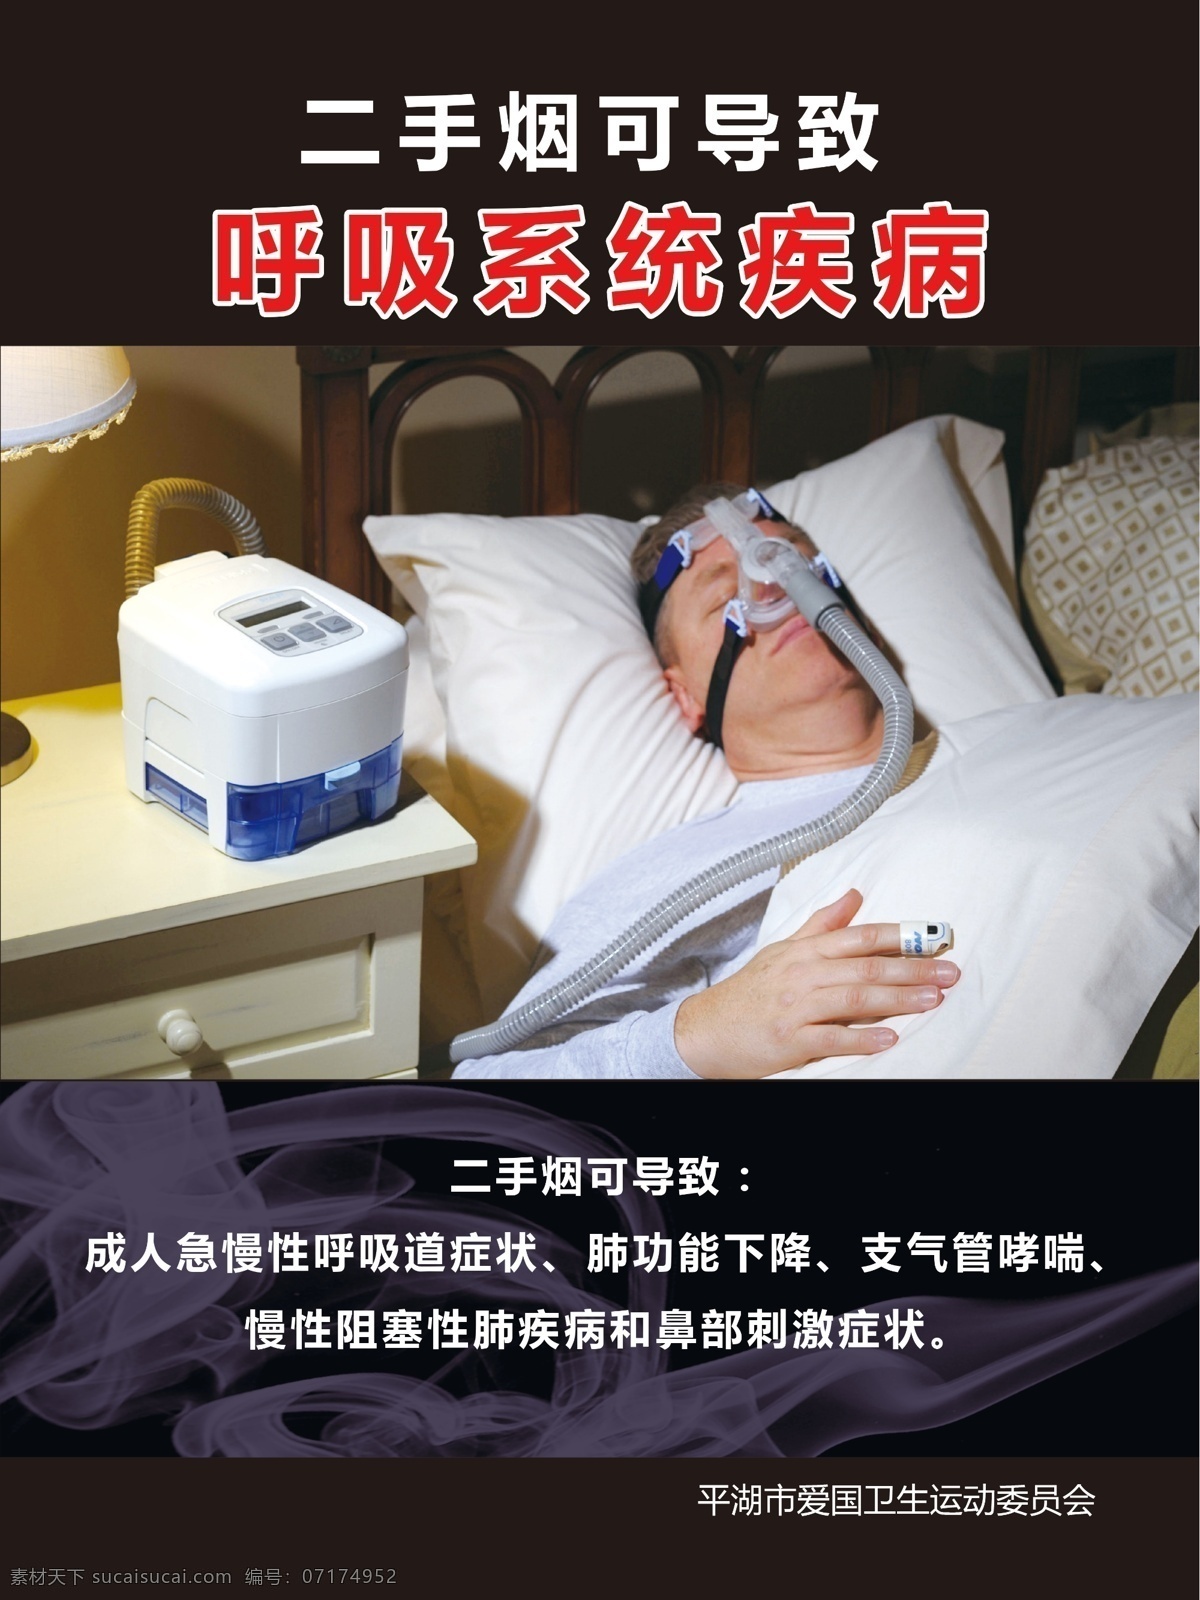 二手烟的危害 二手烟 病人 病床 呼吸机 氧气机 海报 宣传单